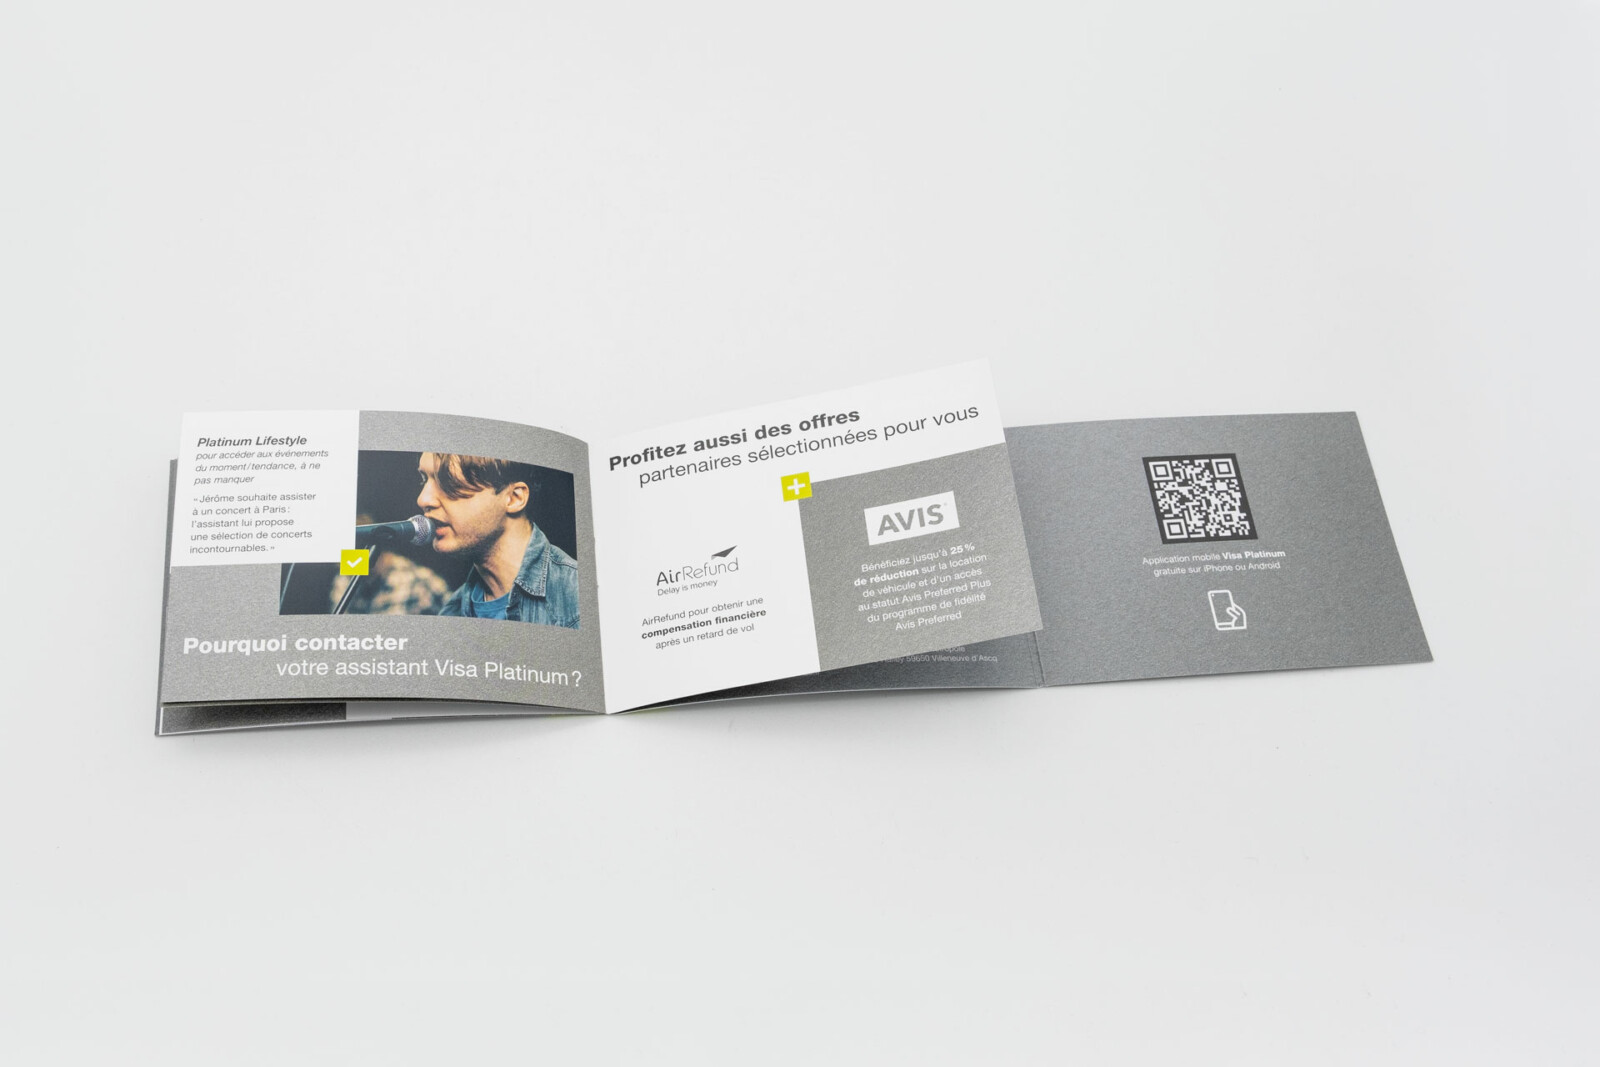 Photo du Welcome Pack premium Visa Platinum distribué par Monabanq. Un QR code est disposé au dos du rabat pour de plus ample informations sur l'offre.